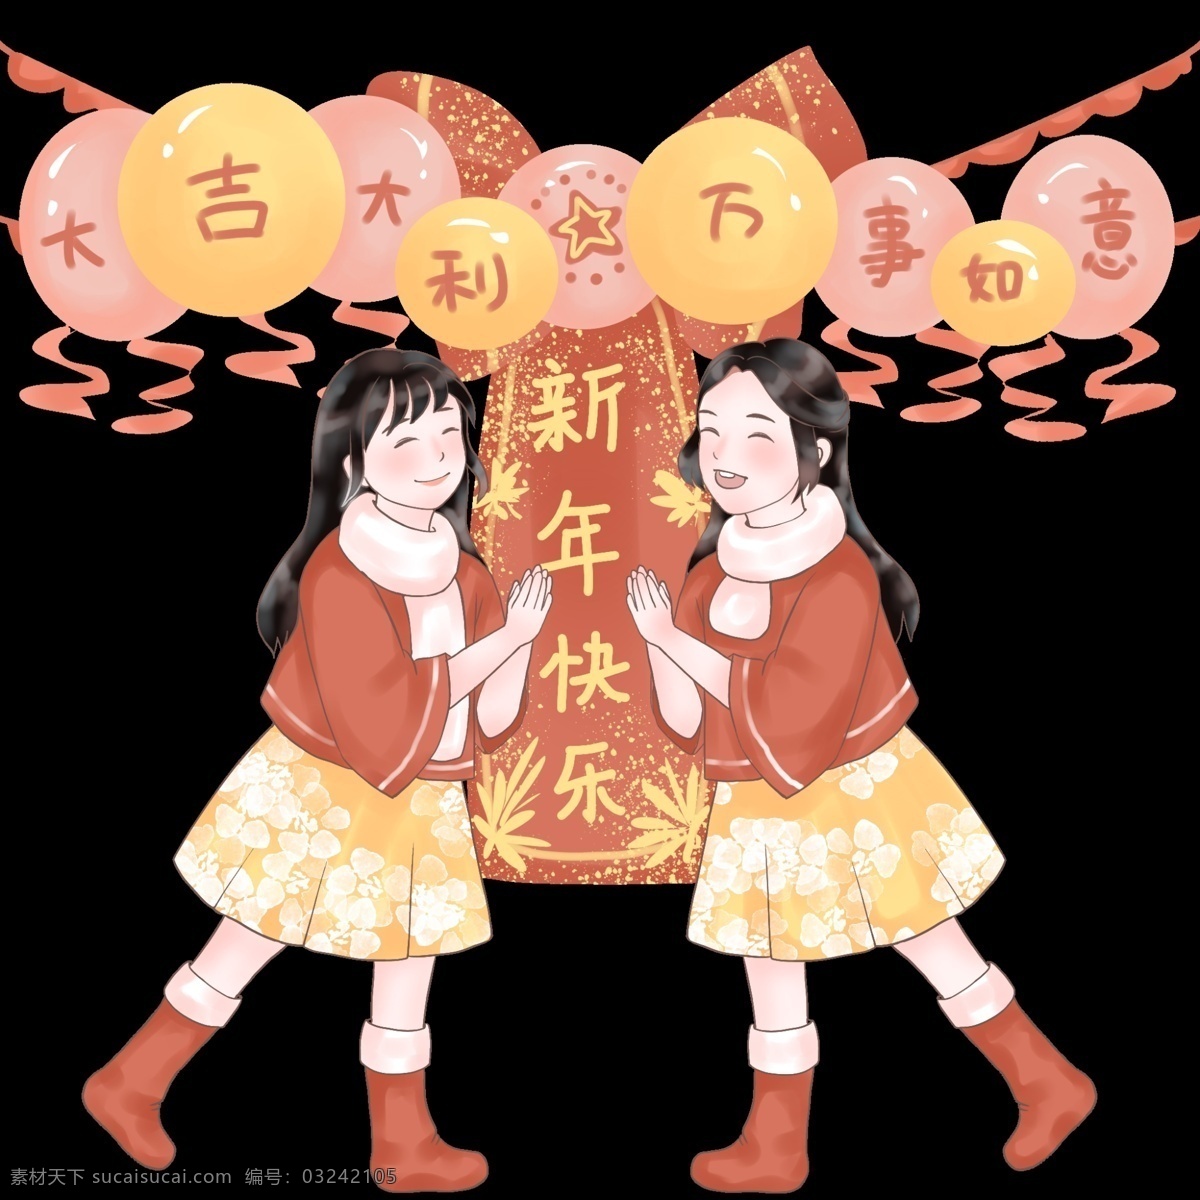 气球 彩带 横幅 贺年 新年快乐 彩色气球 手绘卡通人物 红色 中国风 猪年 2019 农历 新年 欢庆丝带